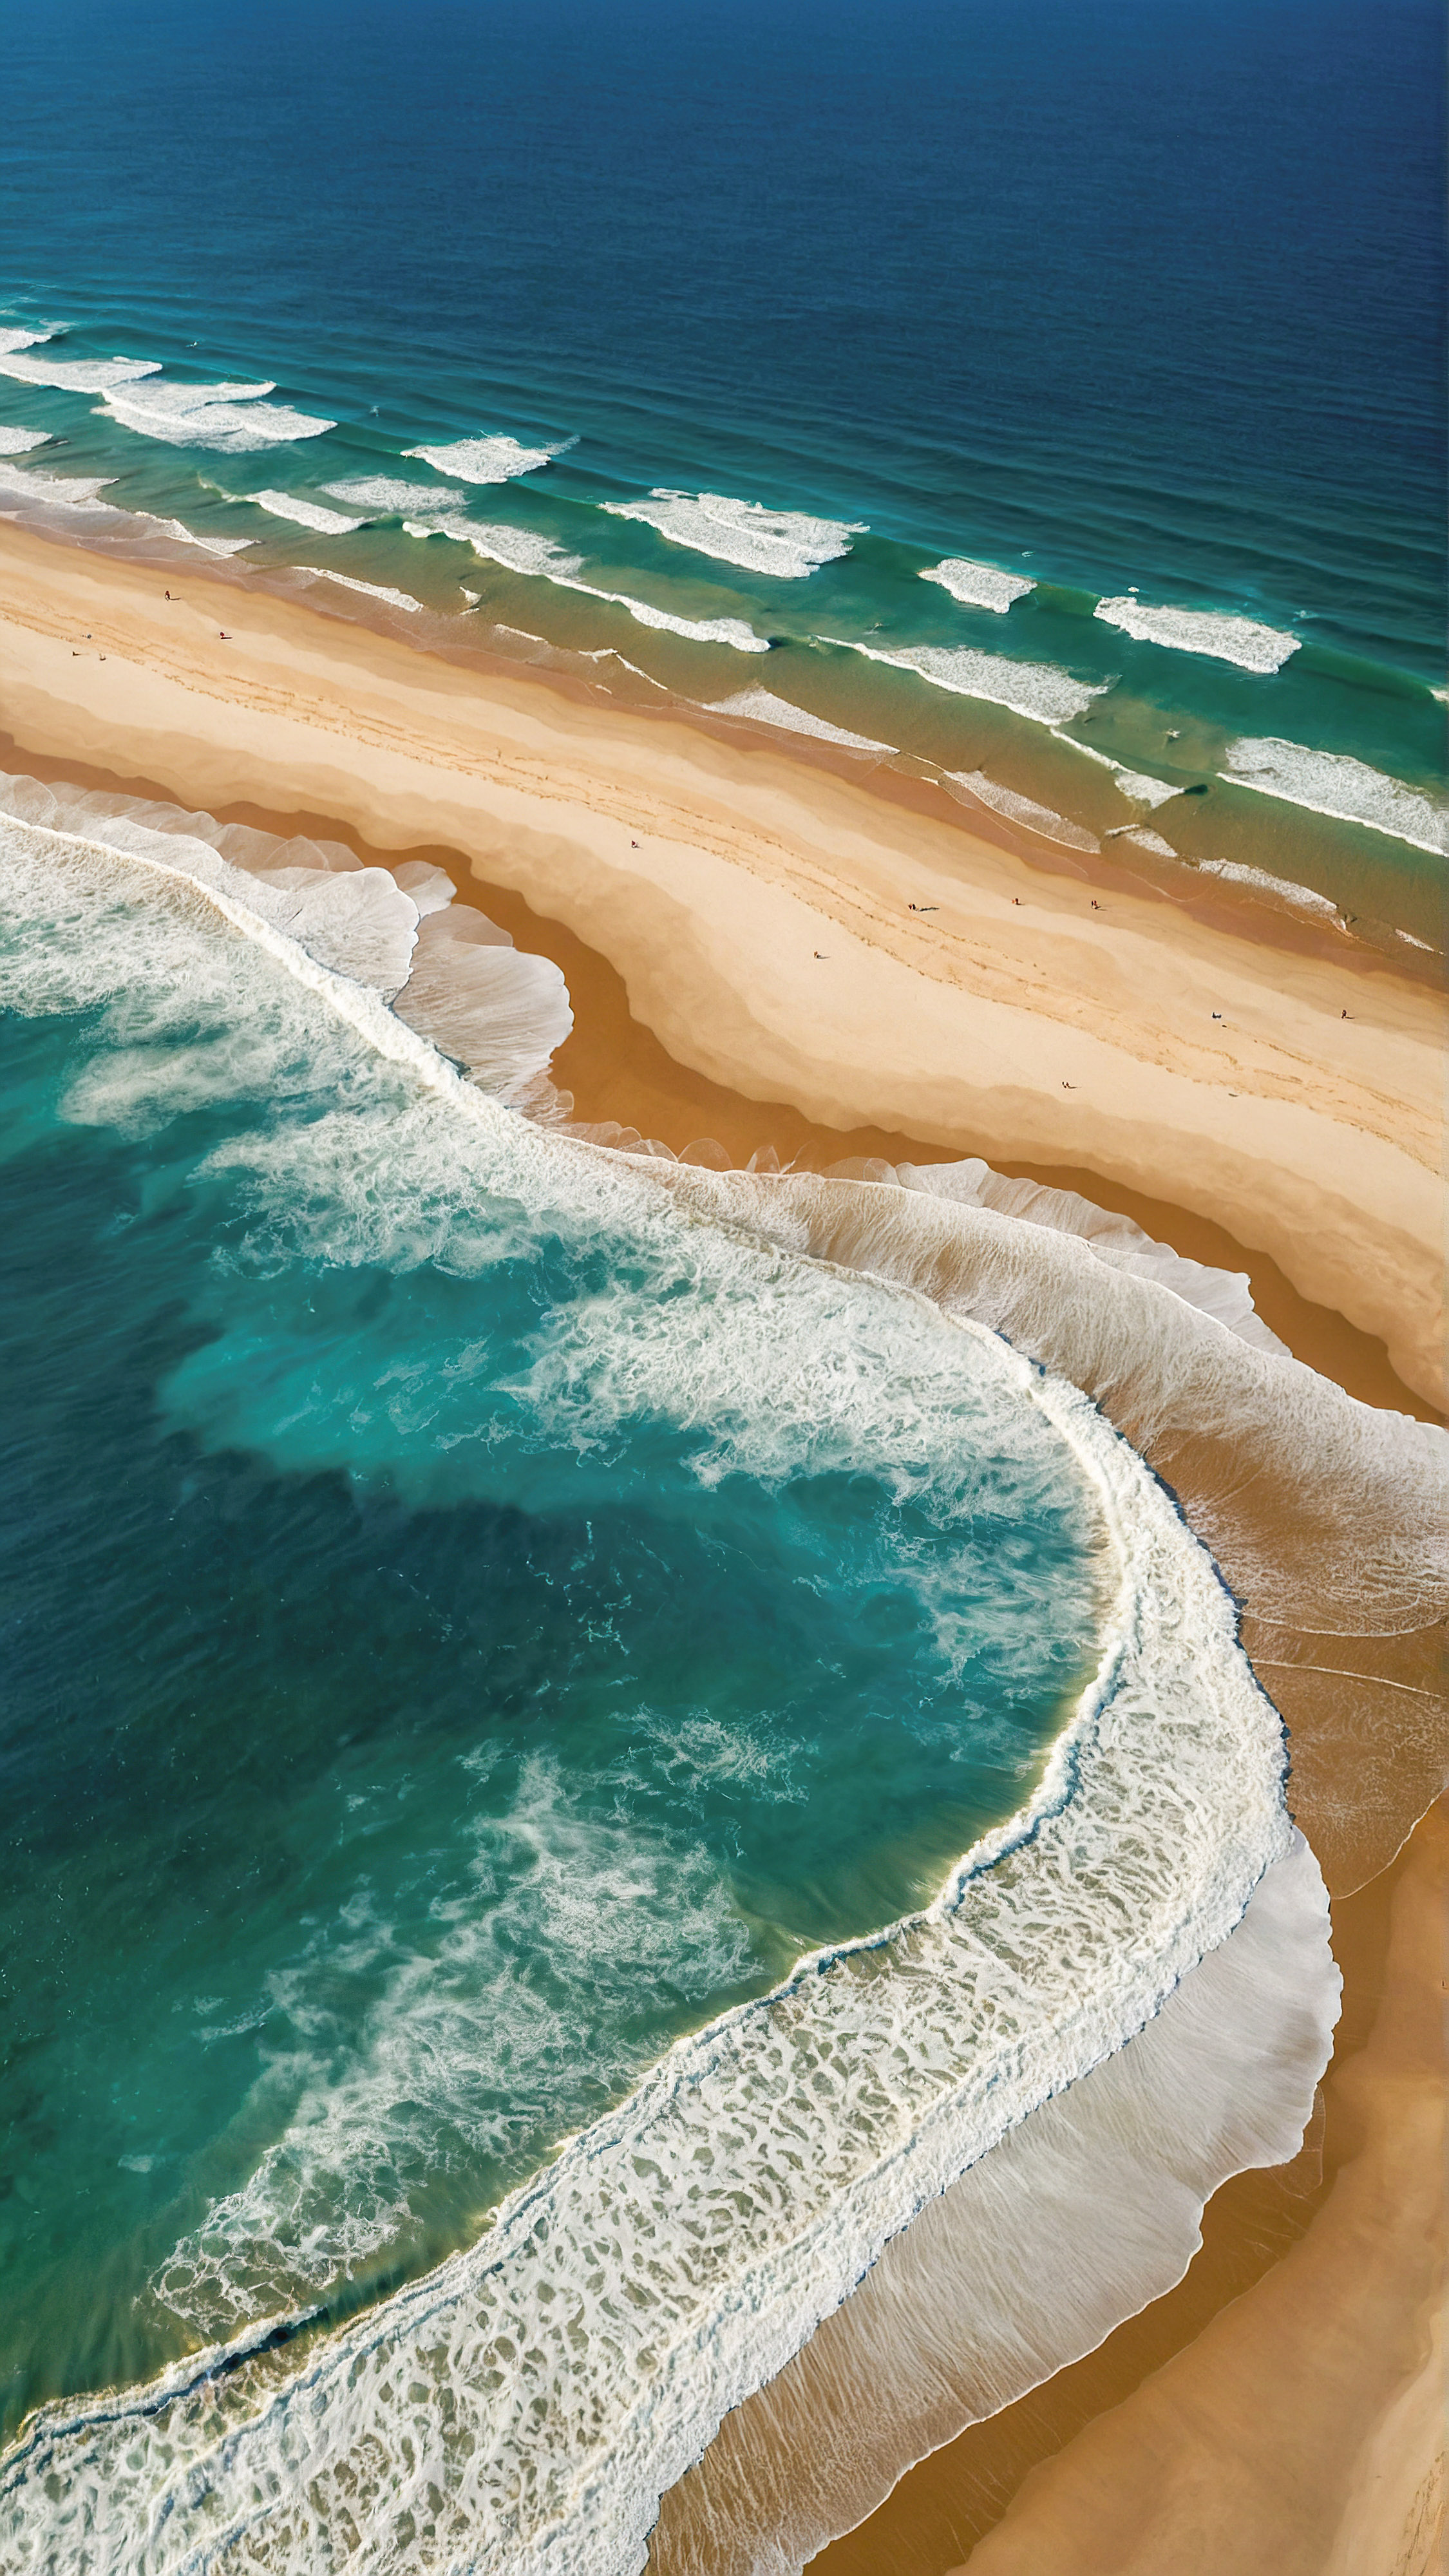 Découvrez la vue aérienne époustouflante de notre arrière-plan Ultra HD 4K pour iPhone, présentant une plage avec un océan bleu profond, ses nuances plus claires indiquant le mouvement des vagues blanches et mousseuses rencontrant le rivage sablonneux de couleur brun clair.